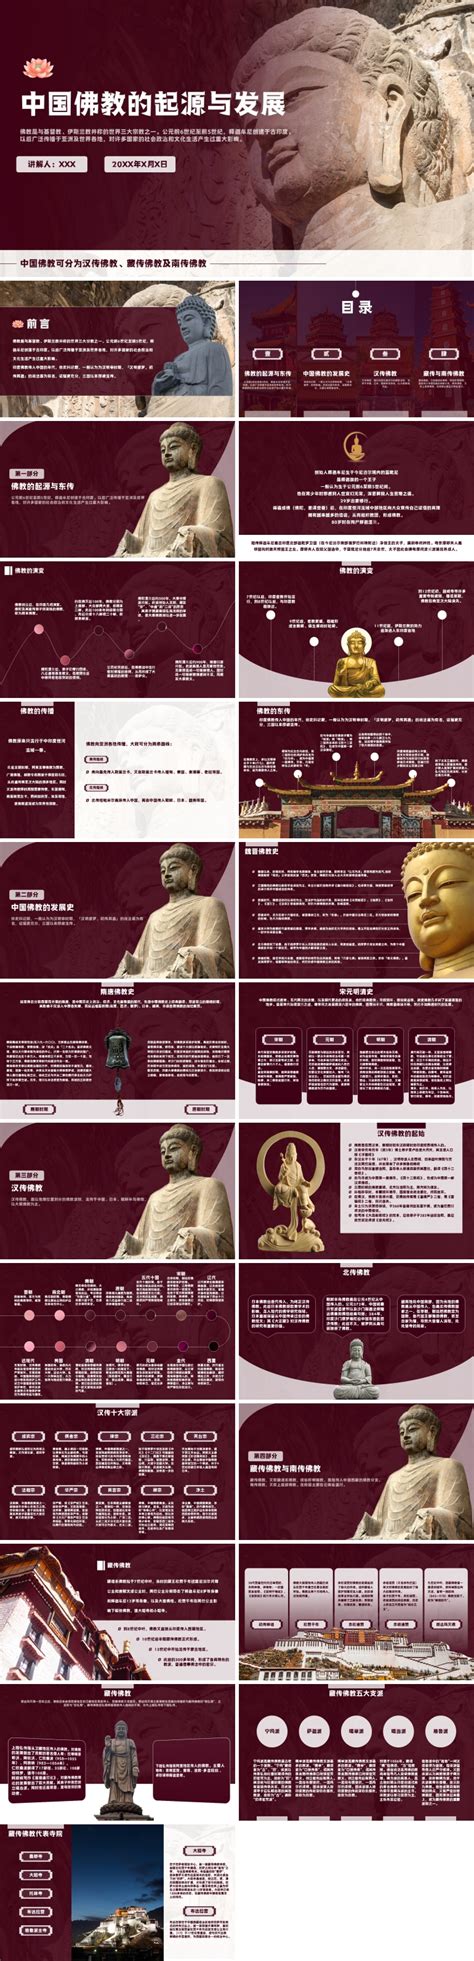 佛教的由来、发展和概况 ppt课件-麦克PPT网